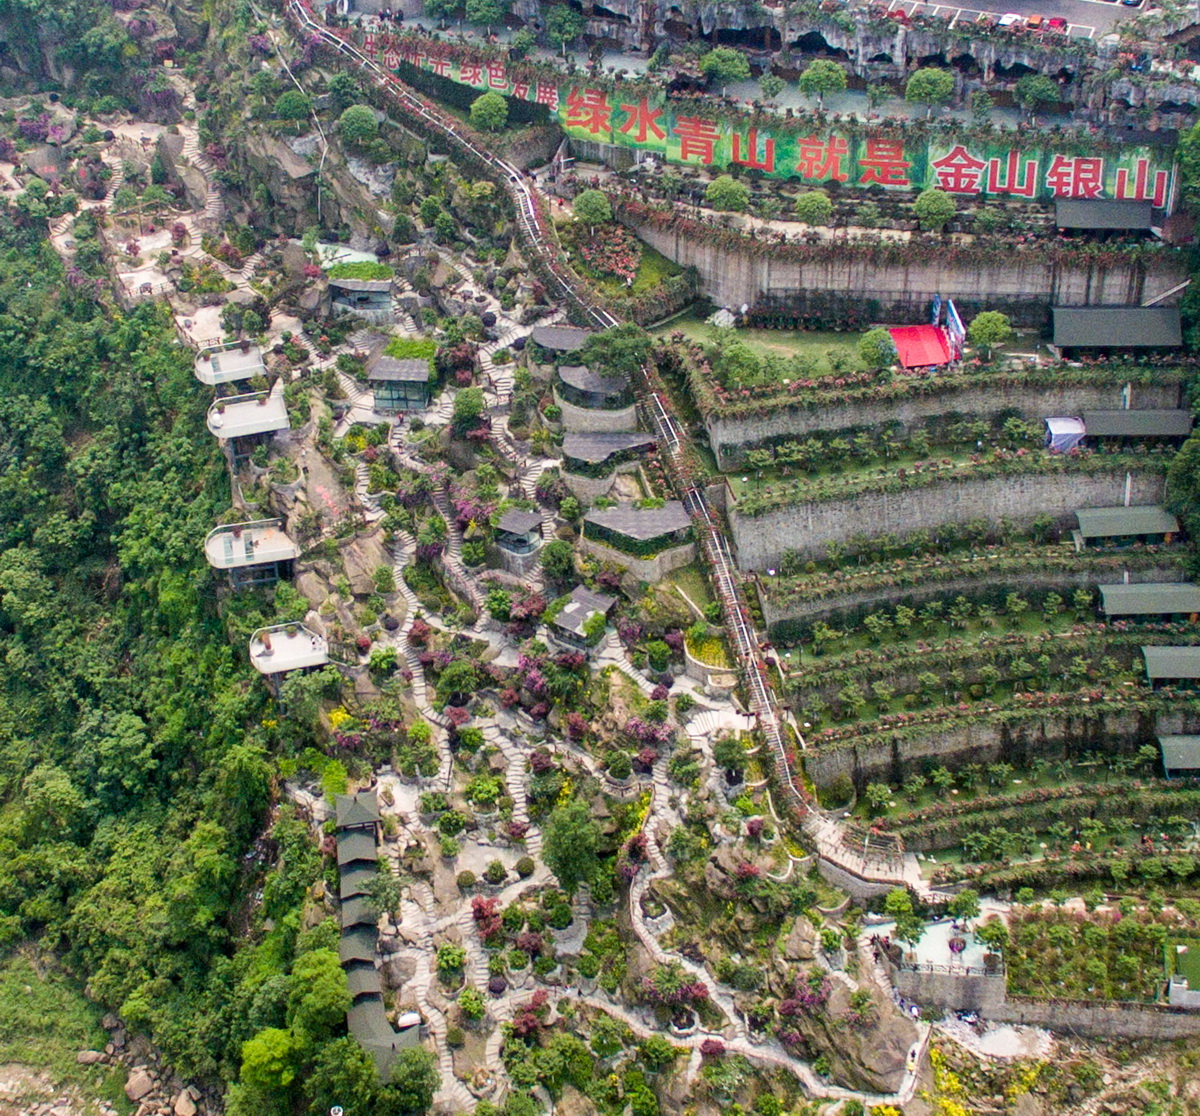 這是4月16日拍攝的重慶市南岸區銅鑼花谷生態園（無人機照片）。